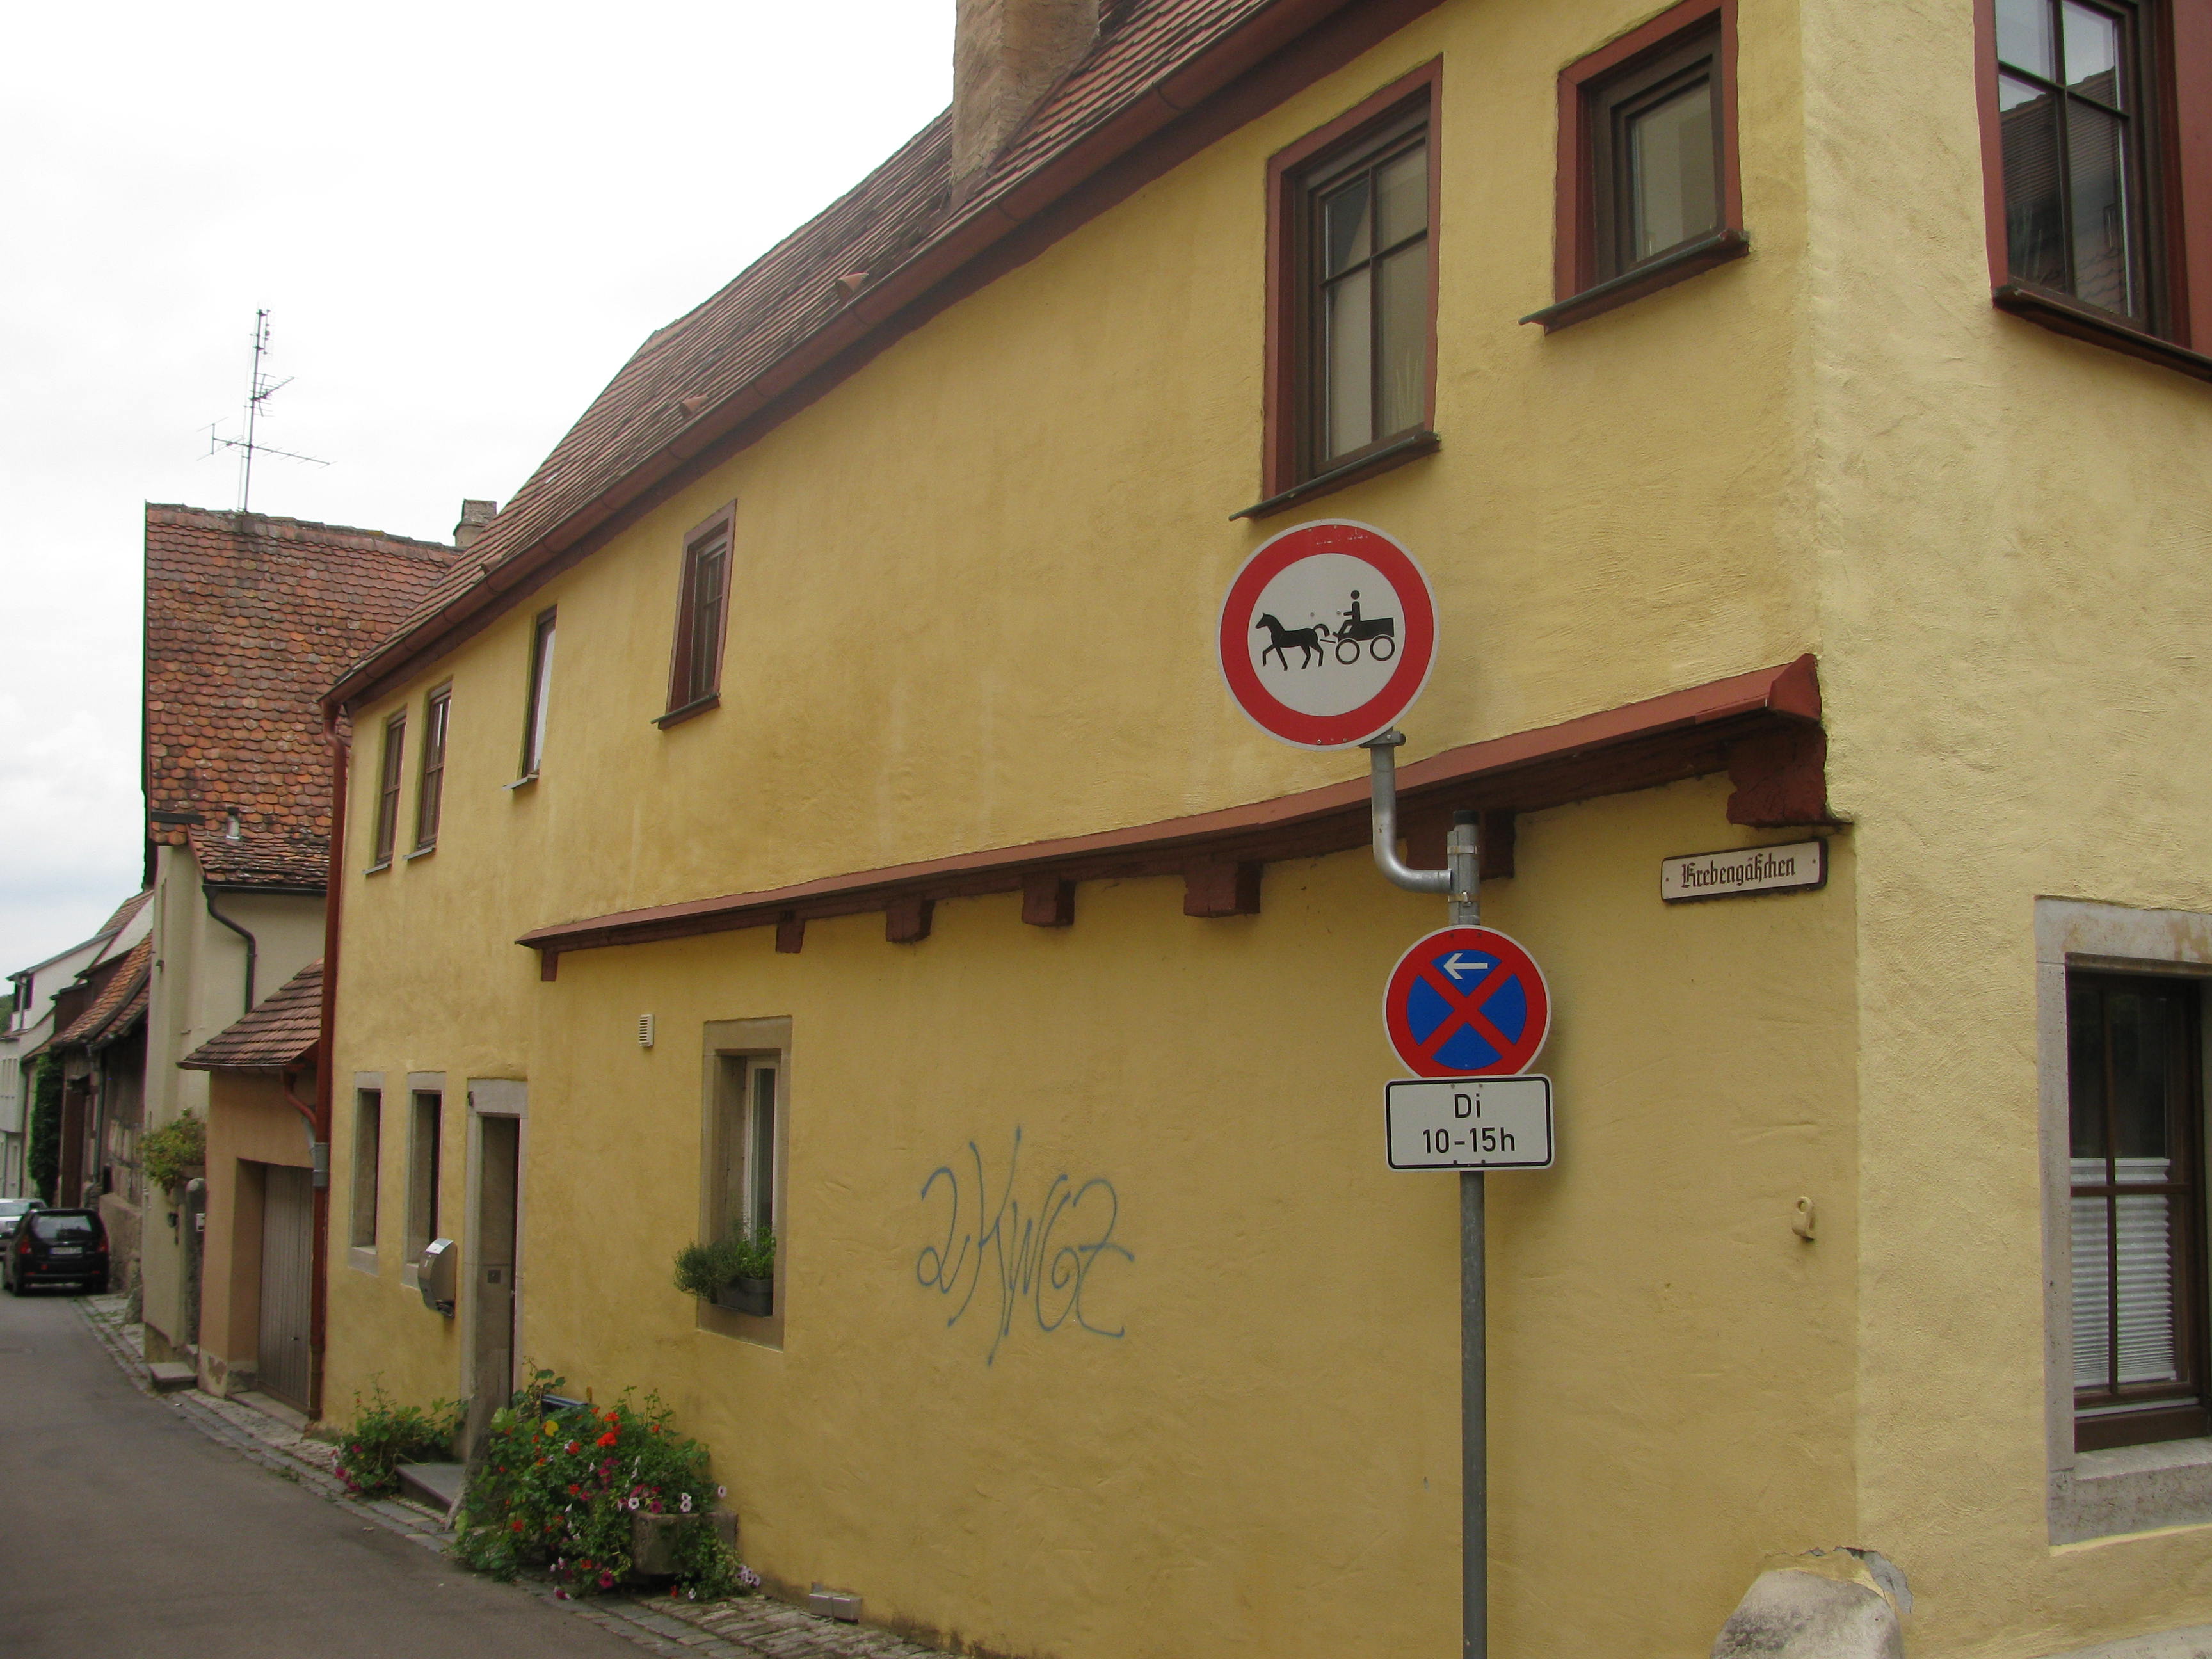 File:Horse carriage prohibition sign - Rothenburg ob der Tauber.JPG ...